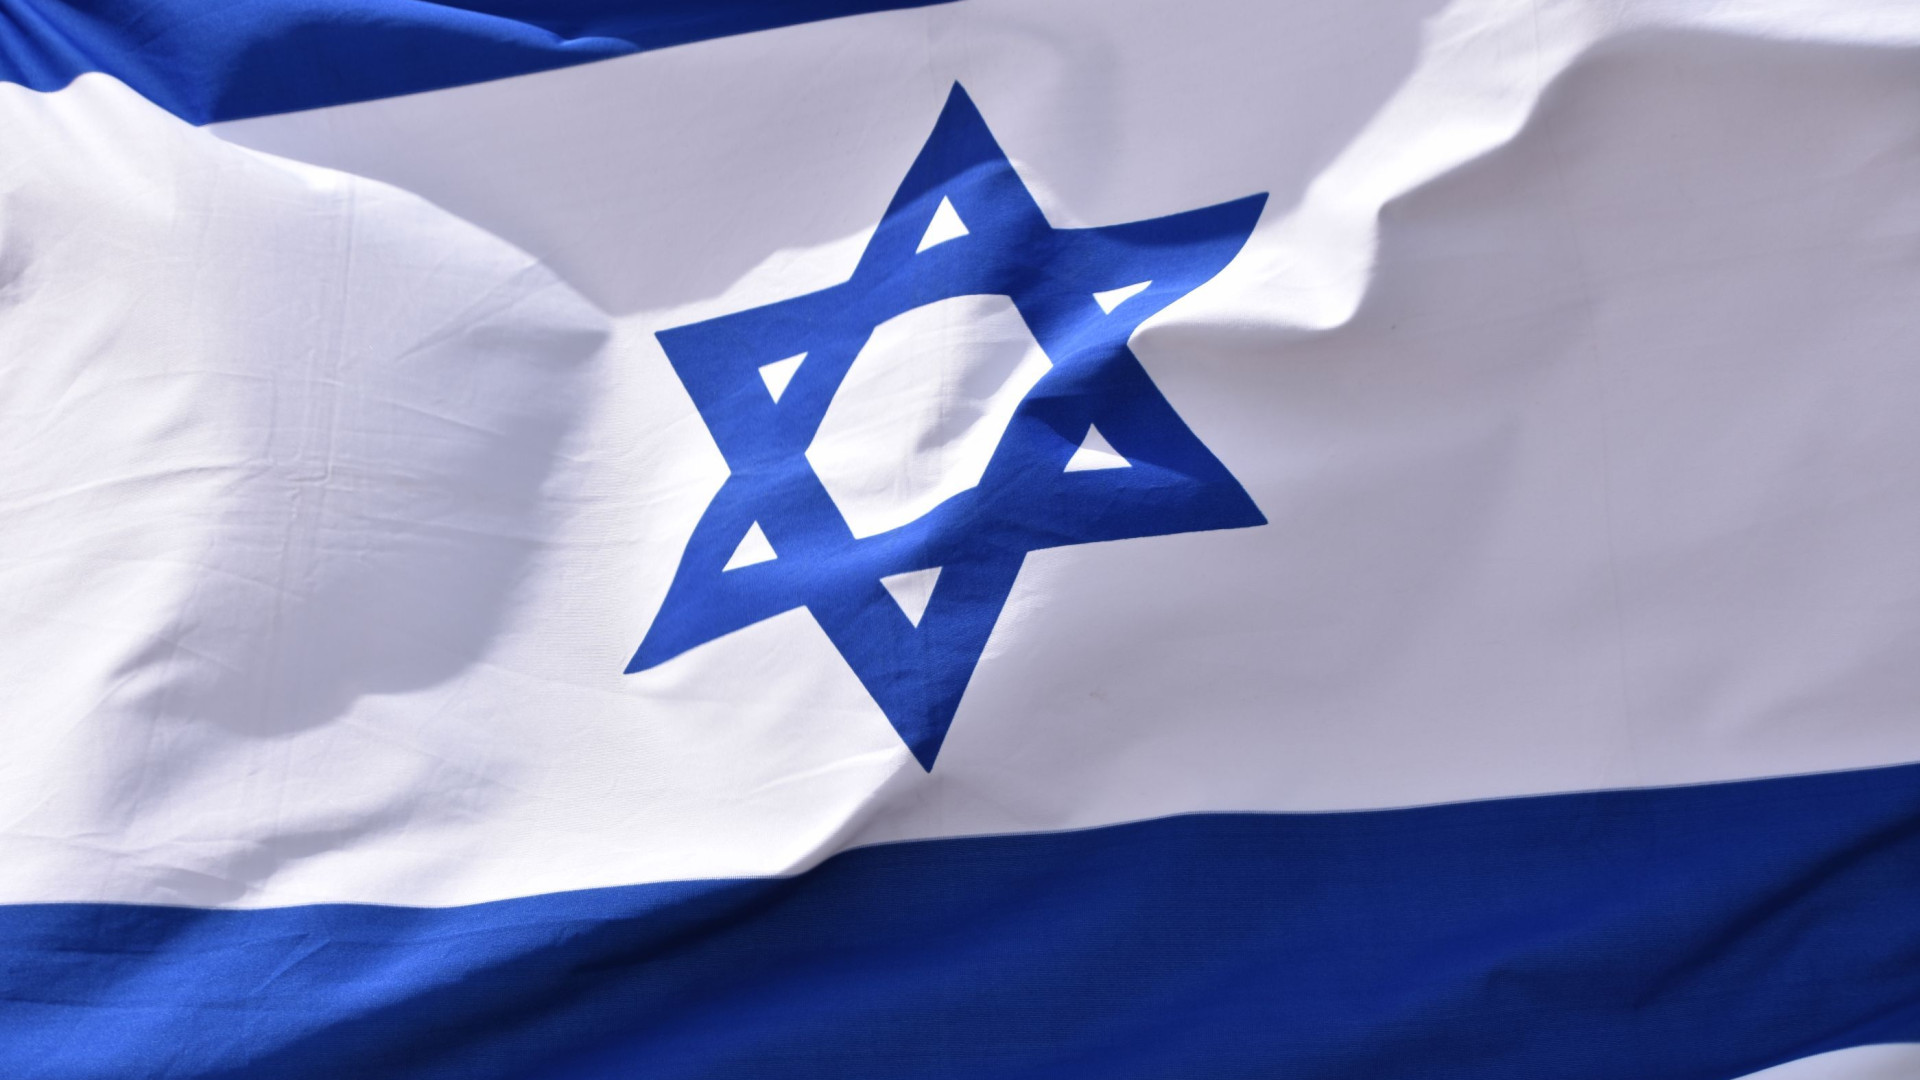  Israel anuncia contrato para mísseis capazes de atingir "toda a região"